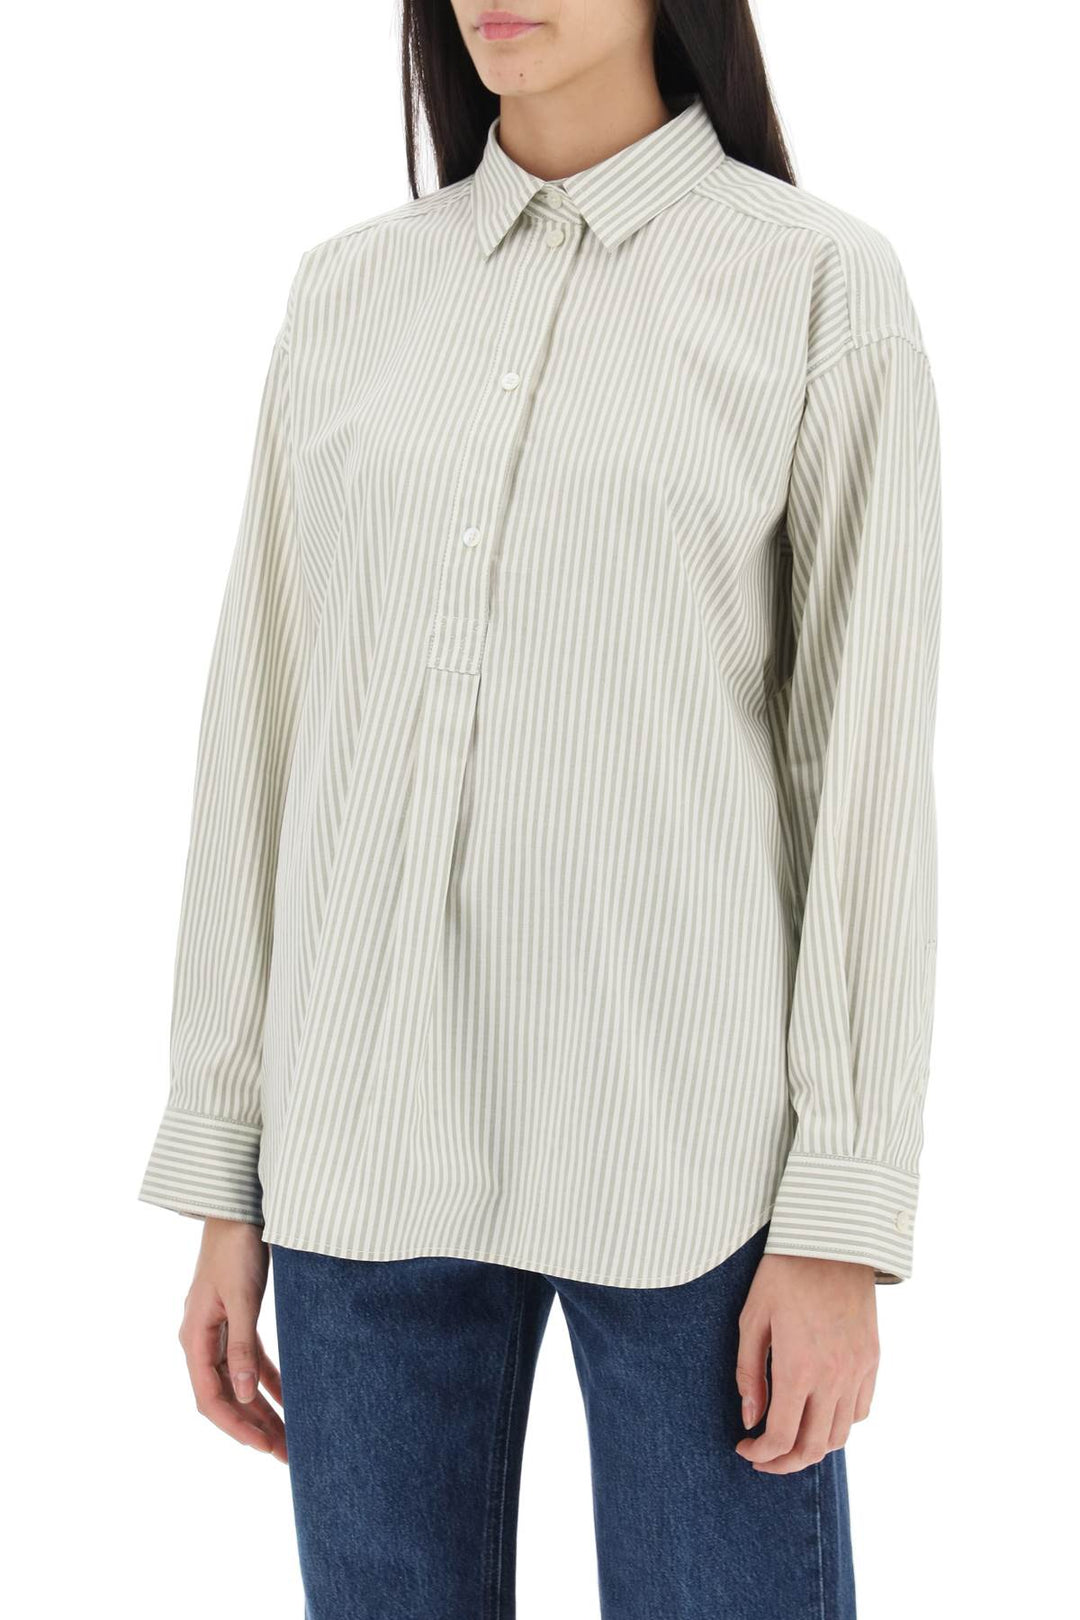 Toteme Striped Oxford Shirt   Bianco